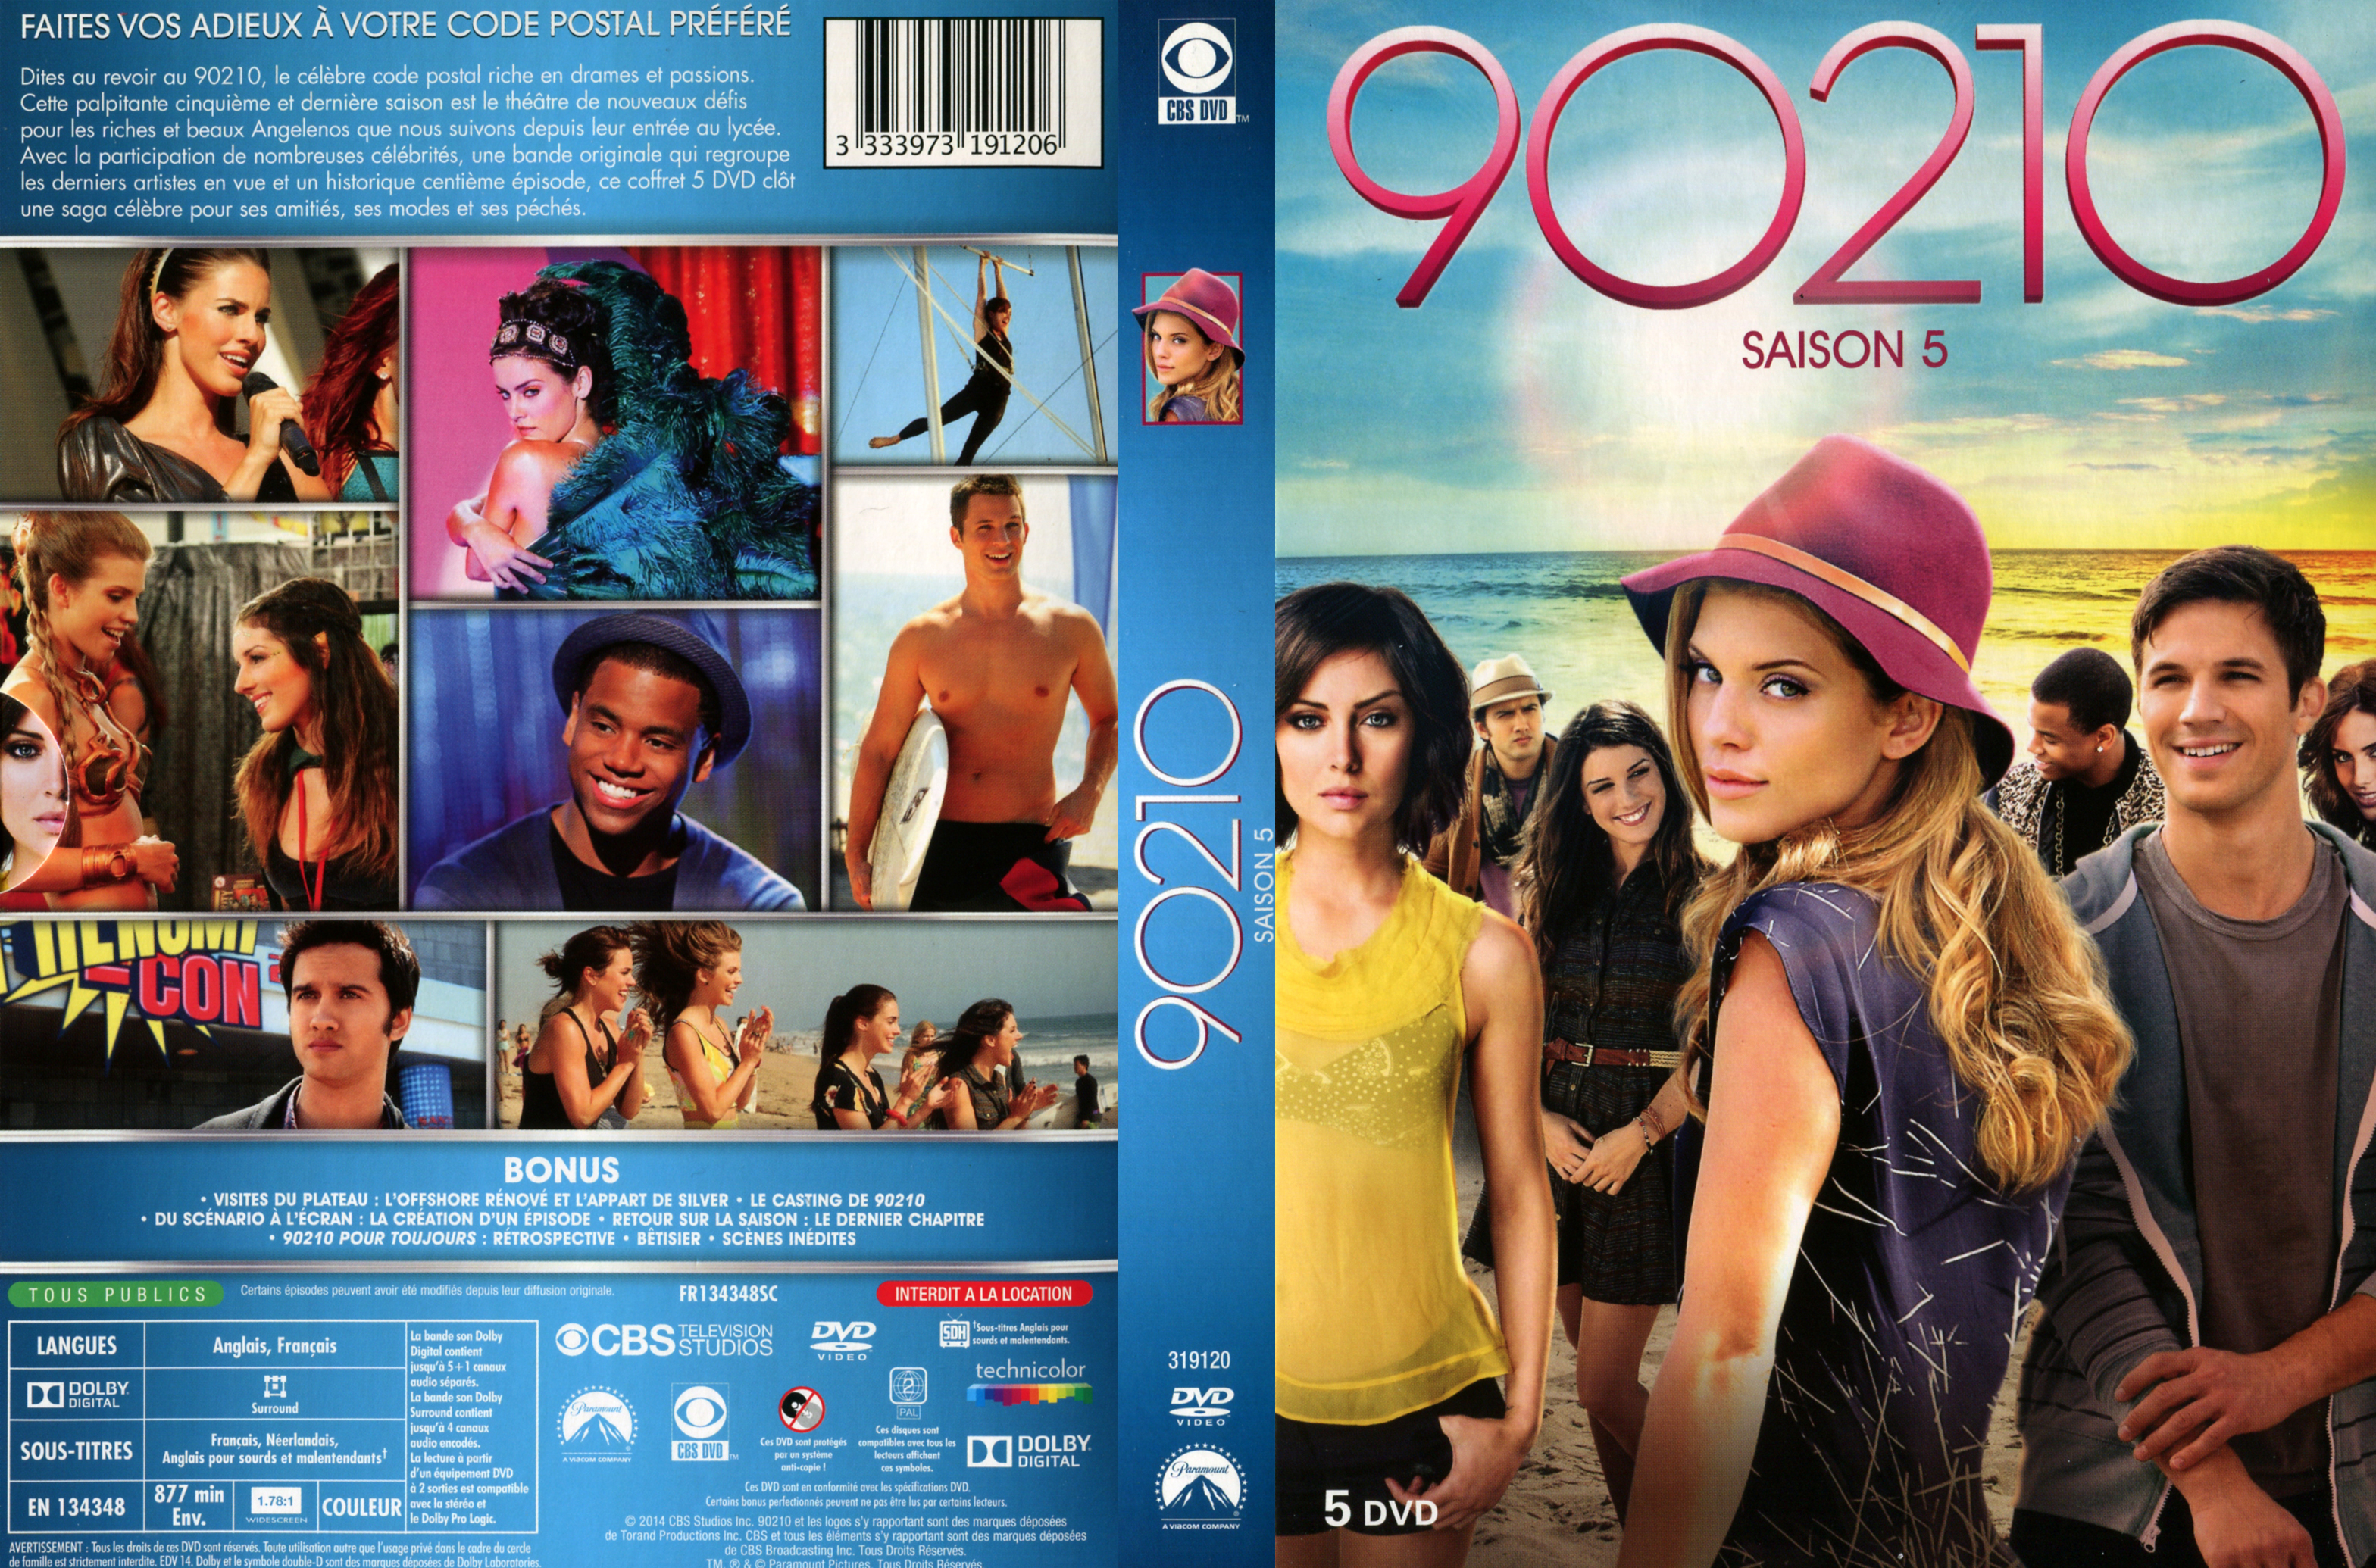 Jaquette DVD 90210 Saison 5 COFFRET